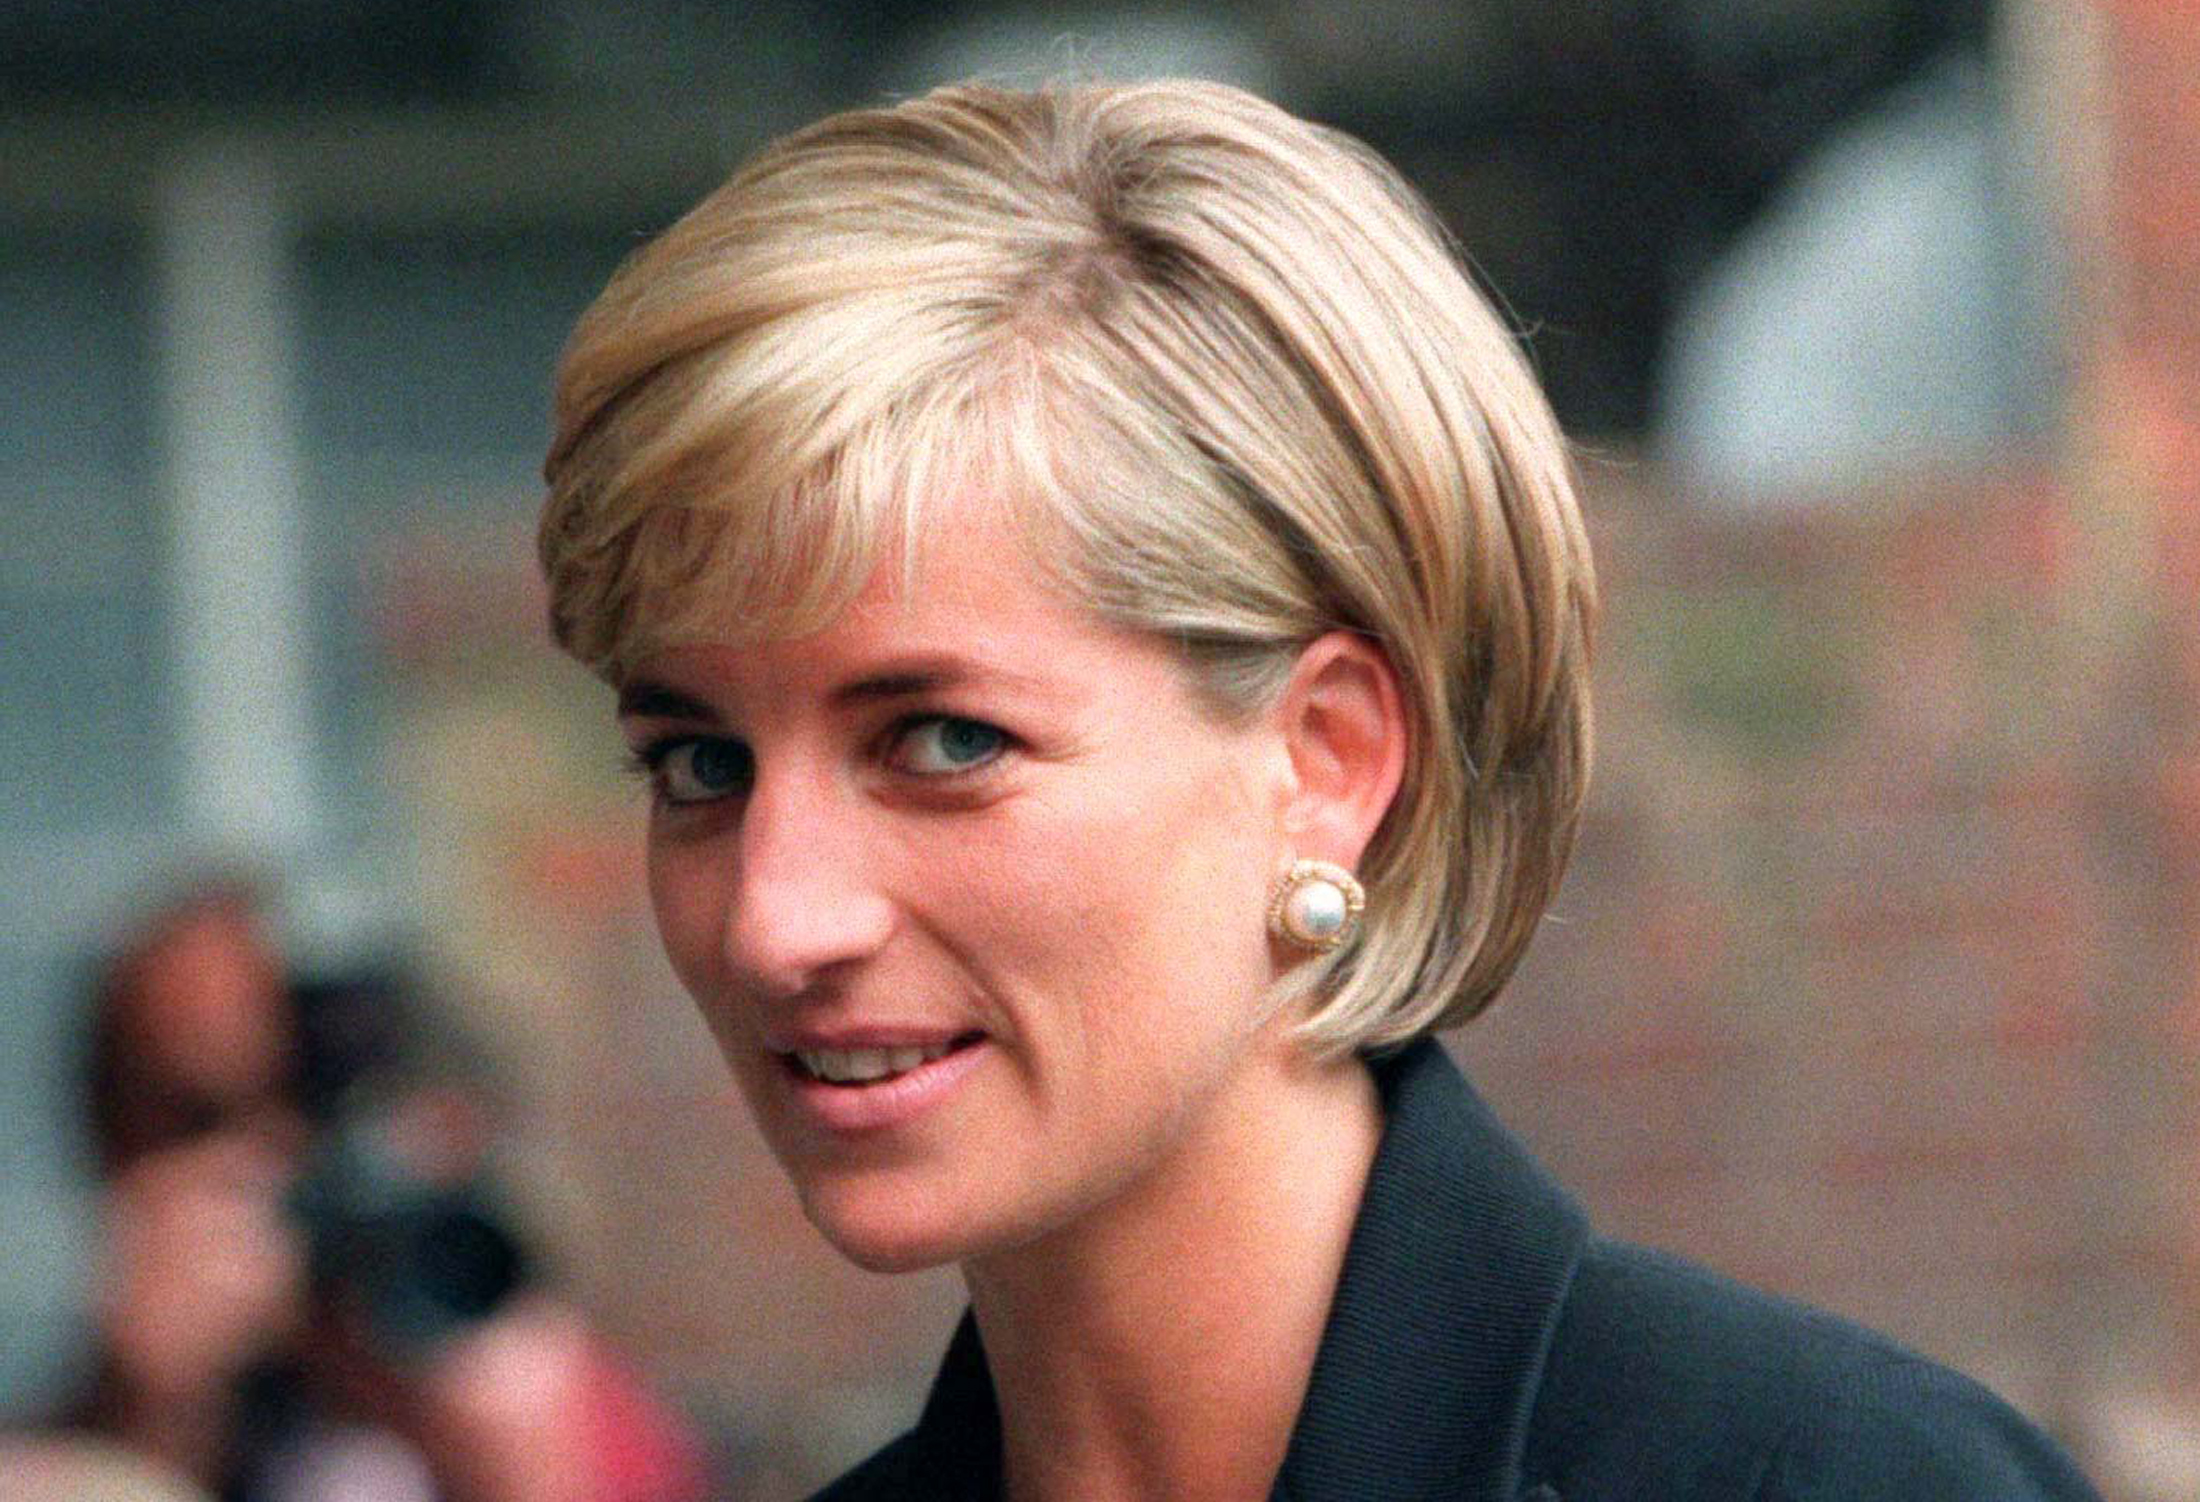 Inaugurarán nueva estatua de la princesa Diana en 2021 en el Palacio de Kensington